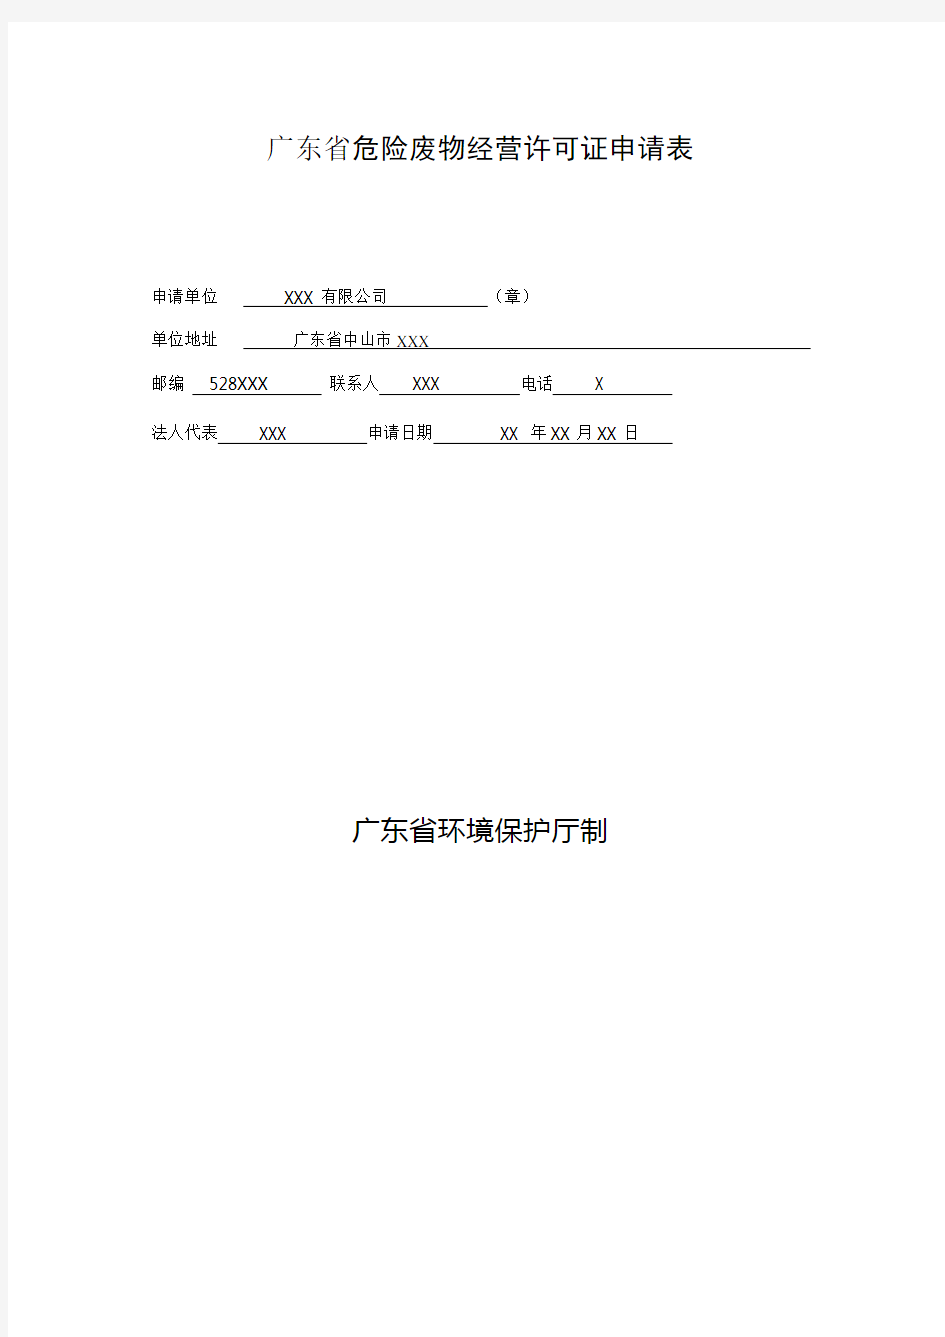 广东省危险废物经营许可证申请表(样表)